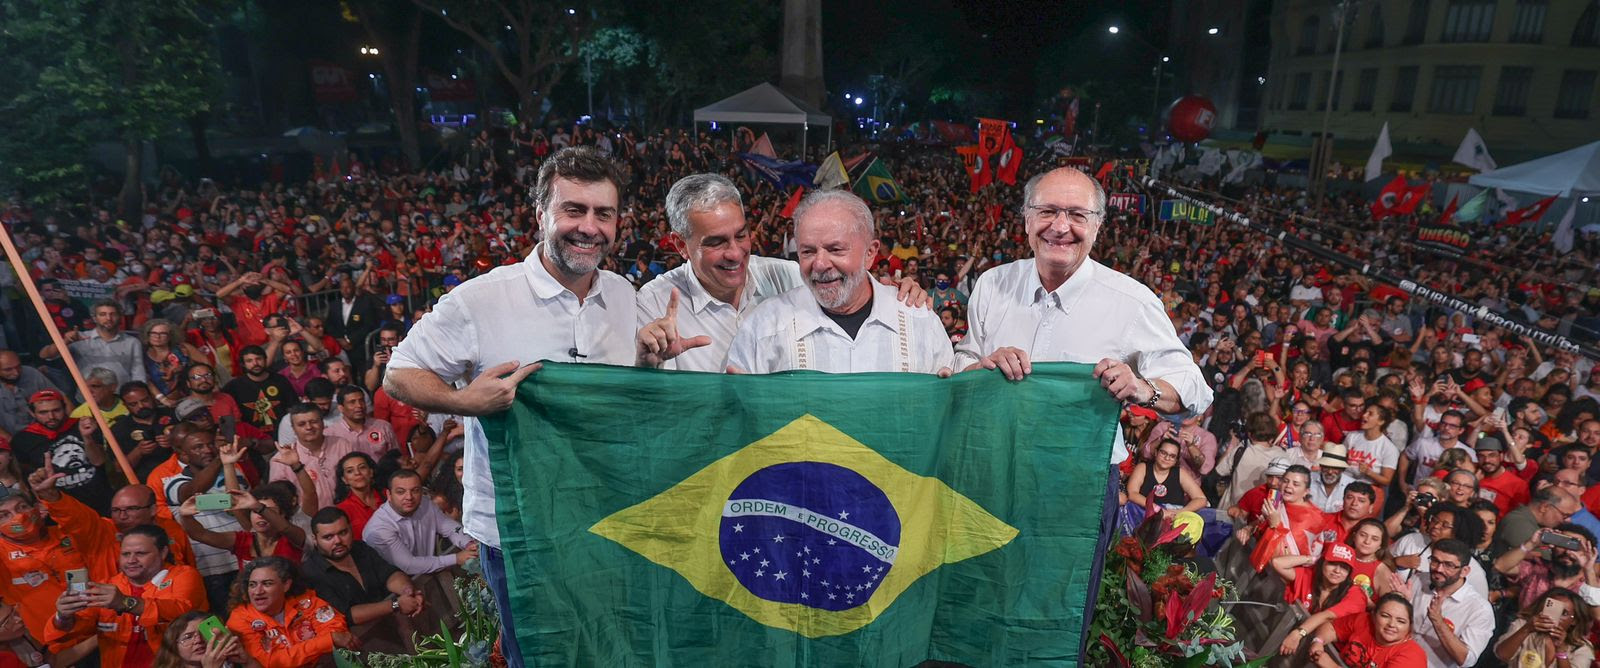 Ato com Lula foi realizado no Rio de Janeiro / Foto: Ricardo Stuckert